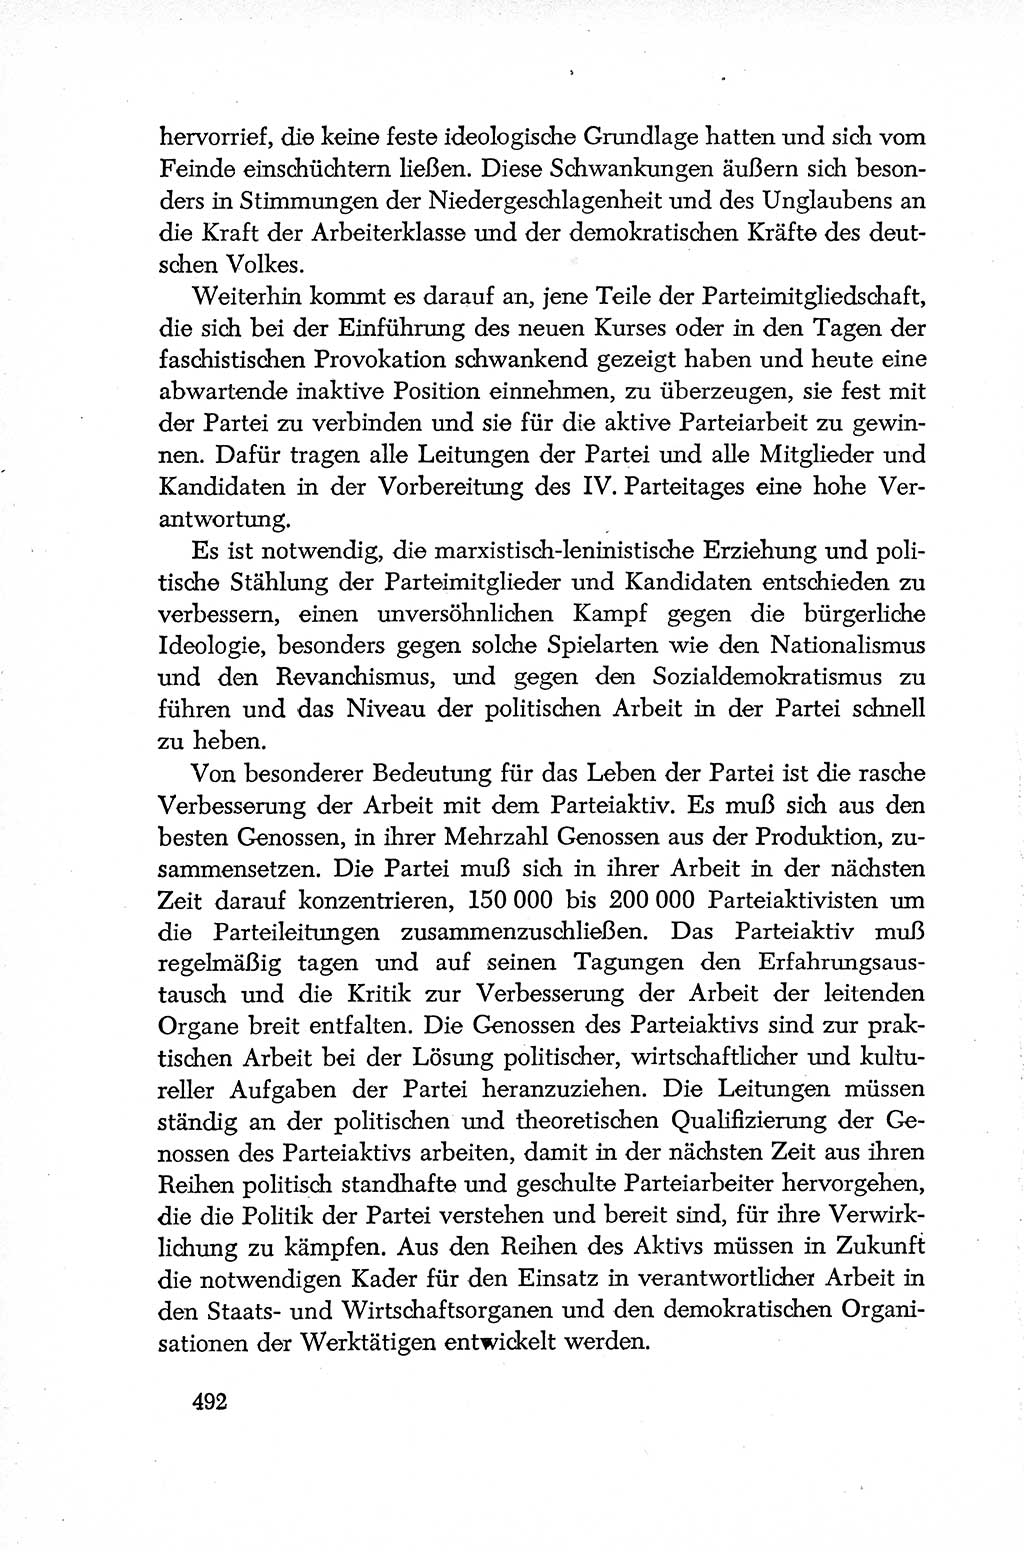 Dokumente der Sozialistischen Einheitspartei Deutschlands (SED) [Deutsche Demokratische Republik (DDR)] 1952-1953, Seite 492 (Dok. SED DDR 1952-1953, S. 492)